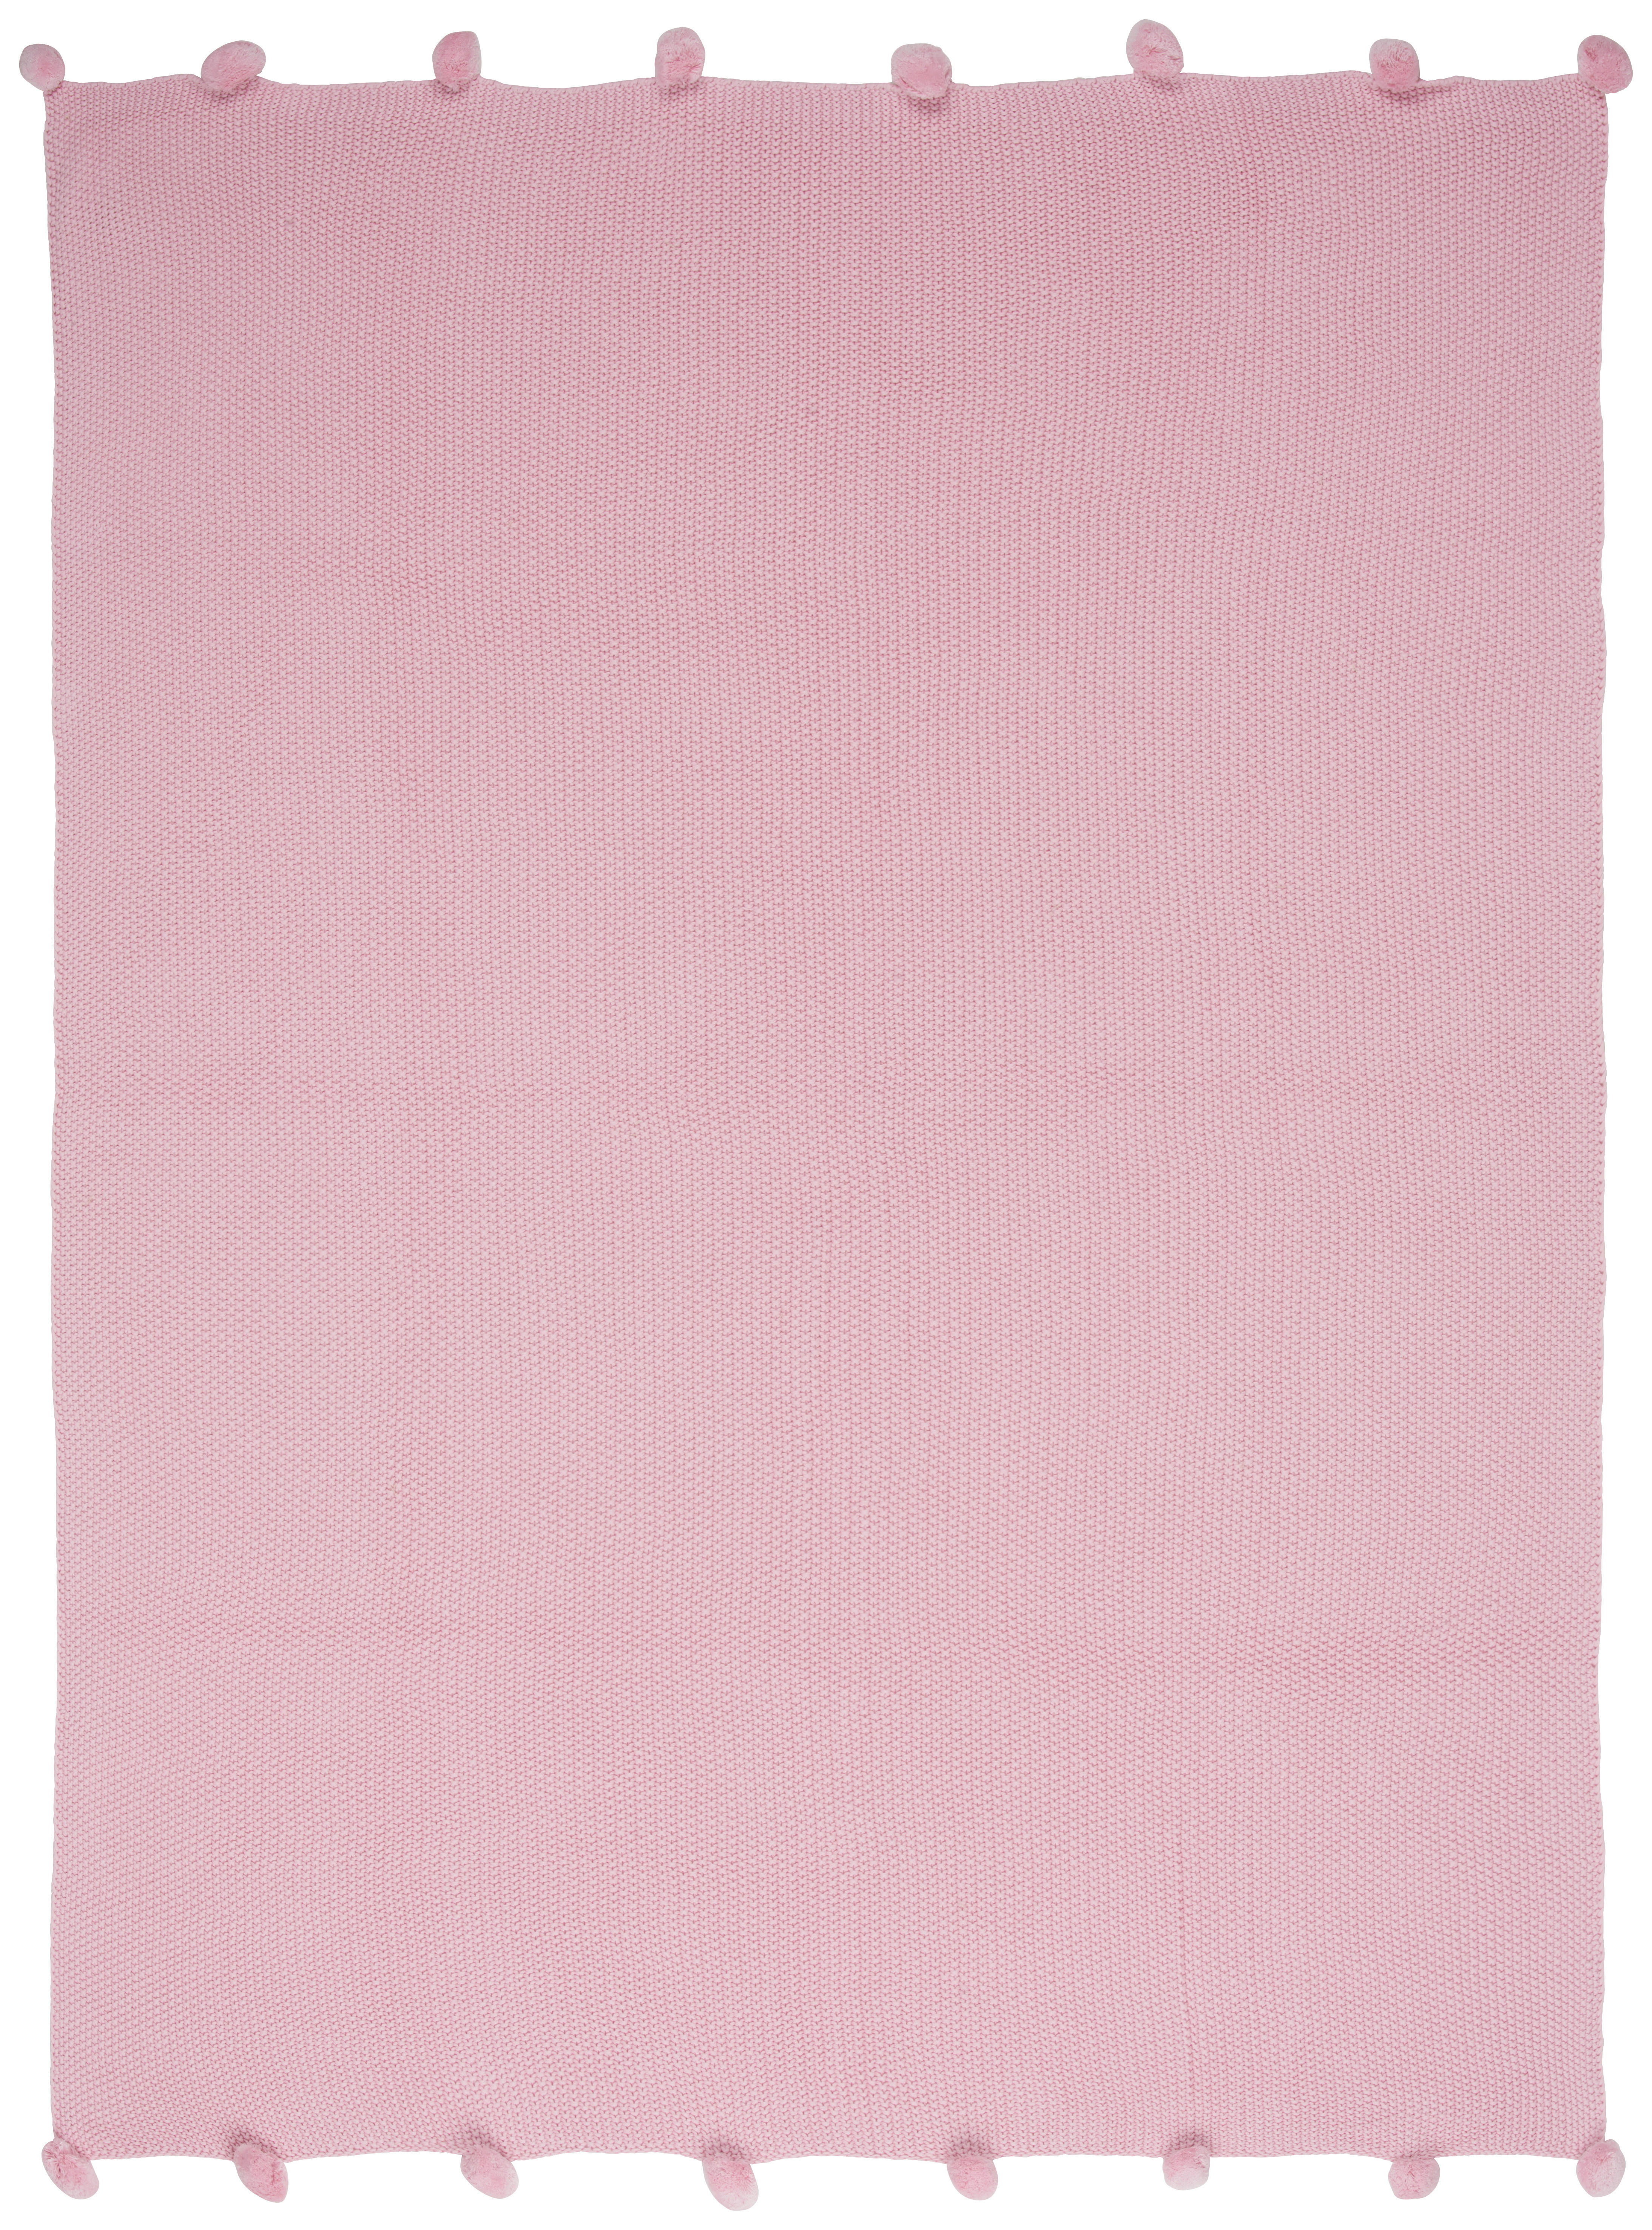 TAGESDECKE 130/170 cm  - Rosa, Trend, Textil (130/170cm) - Landscape